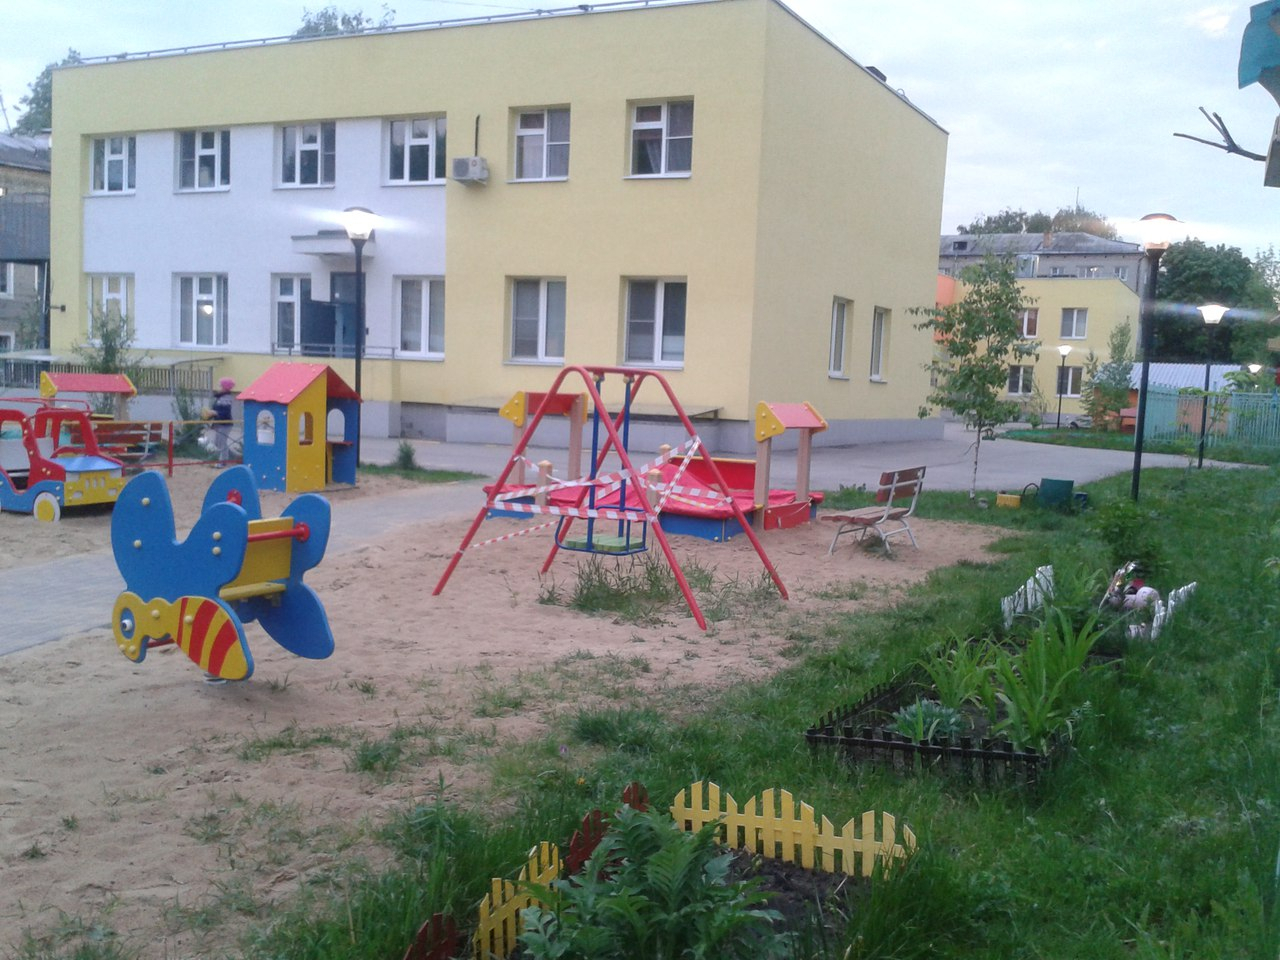 Строительство нового детского сада сорвано в Нижнем Новгороде